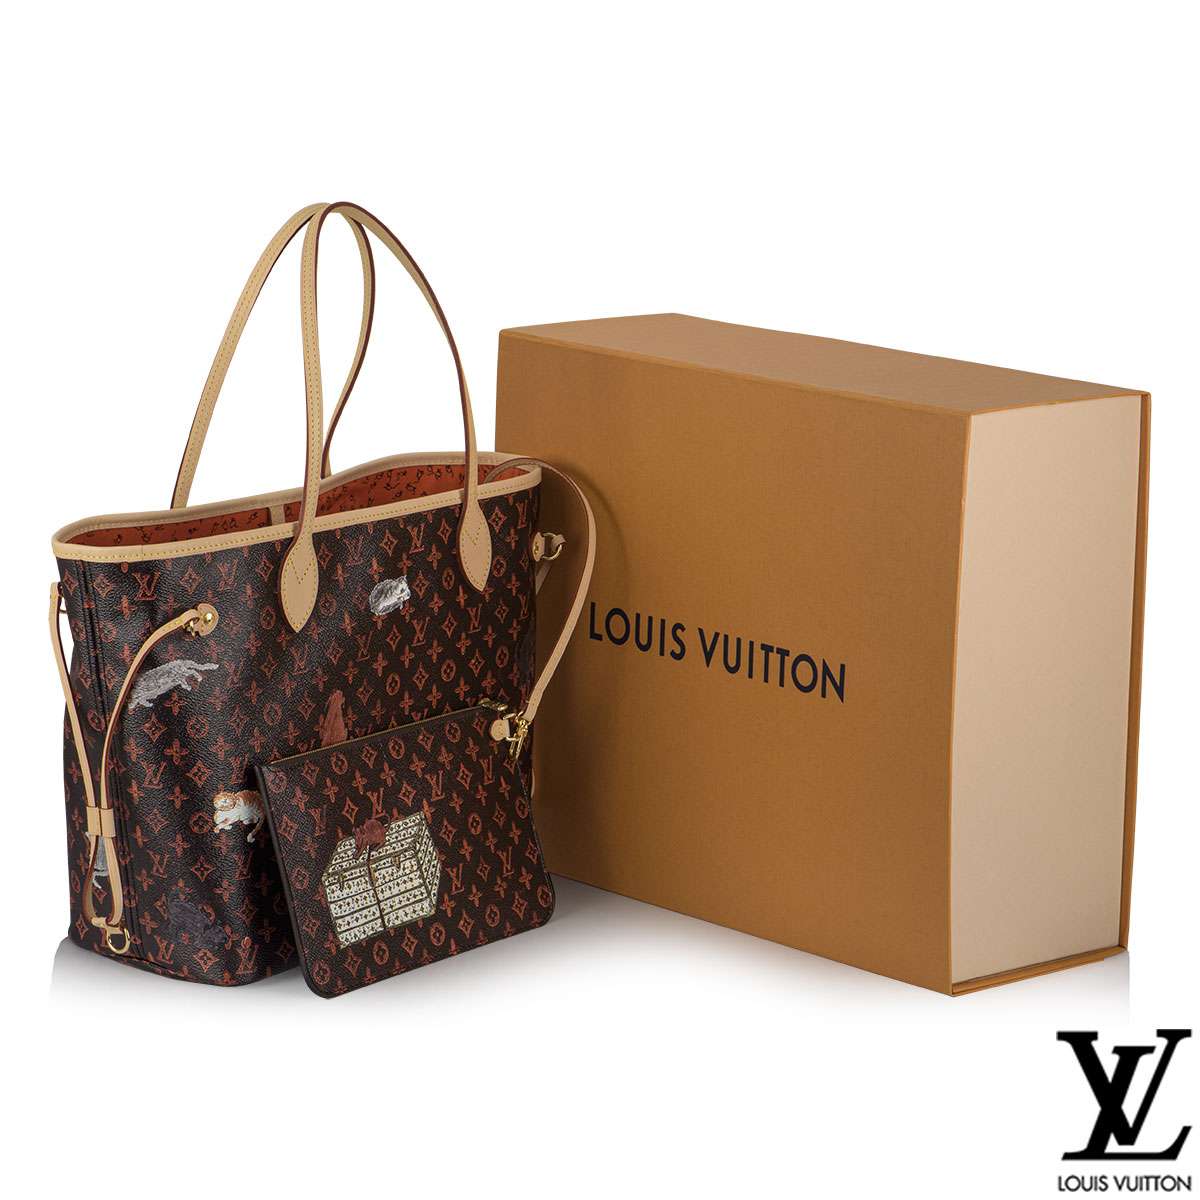 Louis Vuitton Sets New York Pop-Up for Grace Coddington Capsule